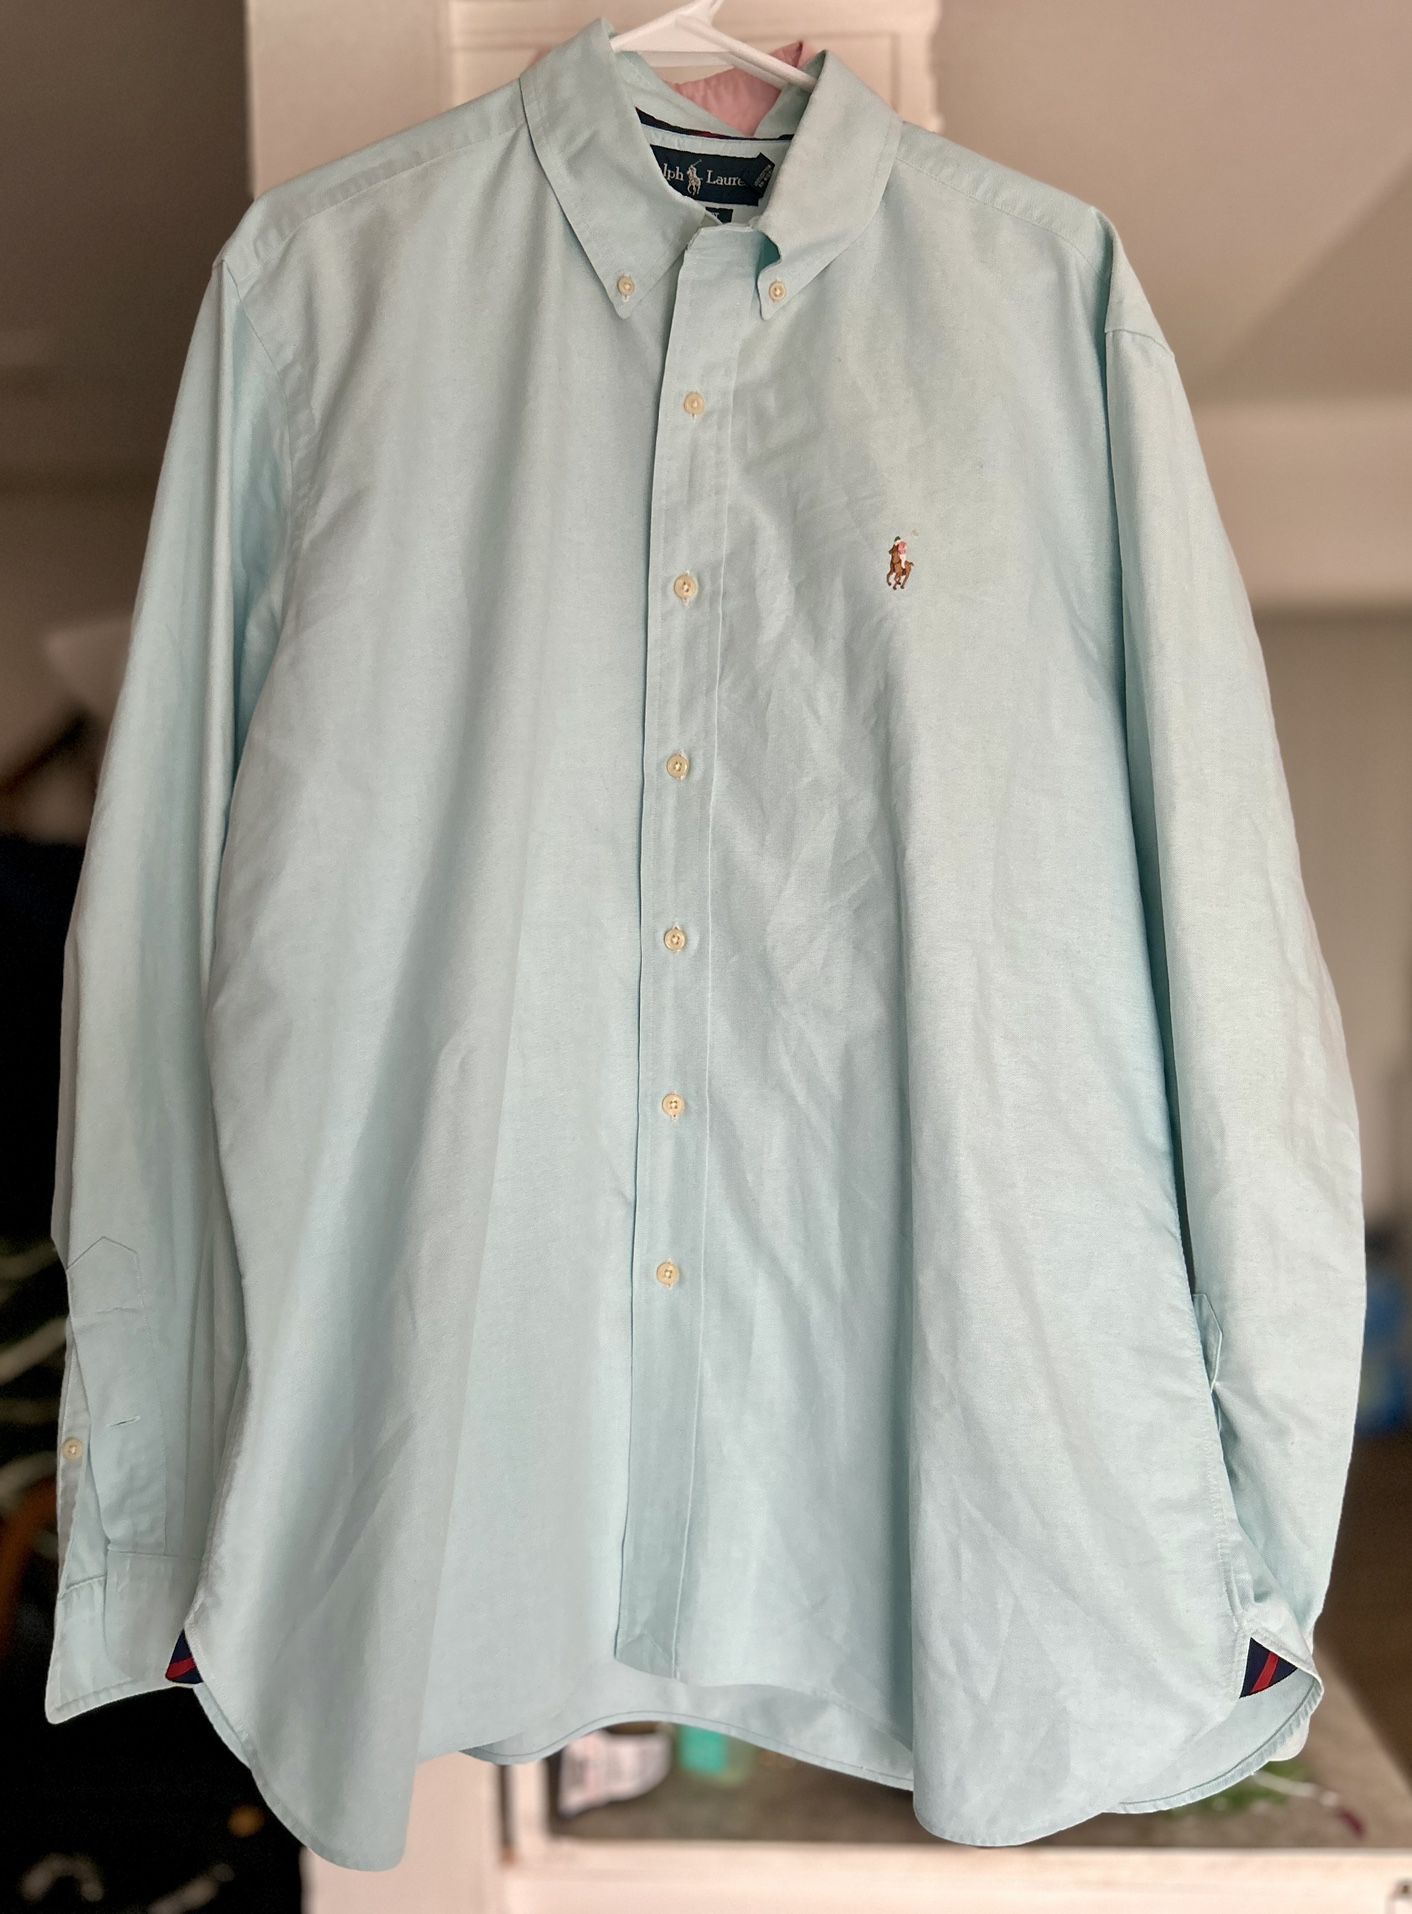  2 Polo Ralph Lauren Classic Fit Oxford Button Front L/S Cotton Shirt  Men's XL